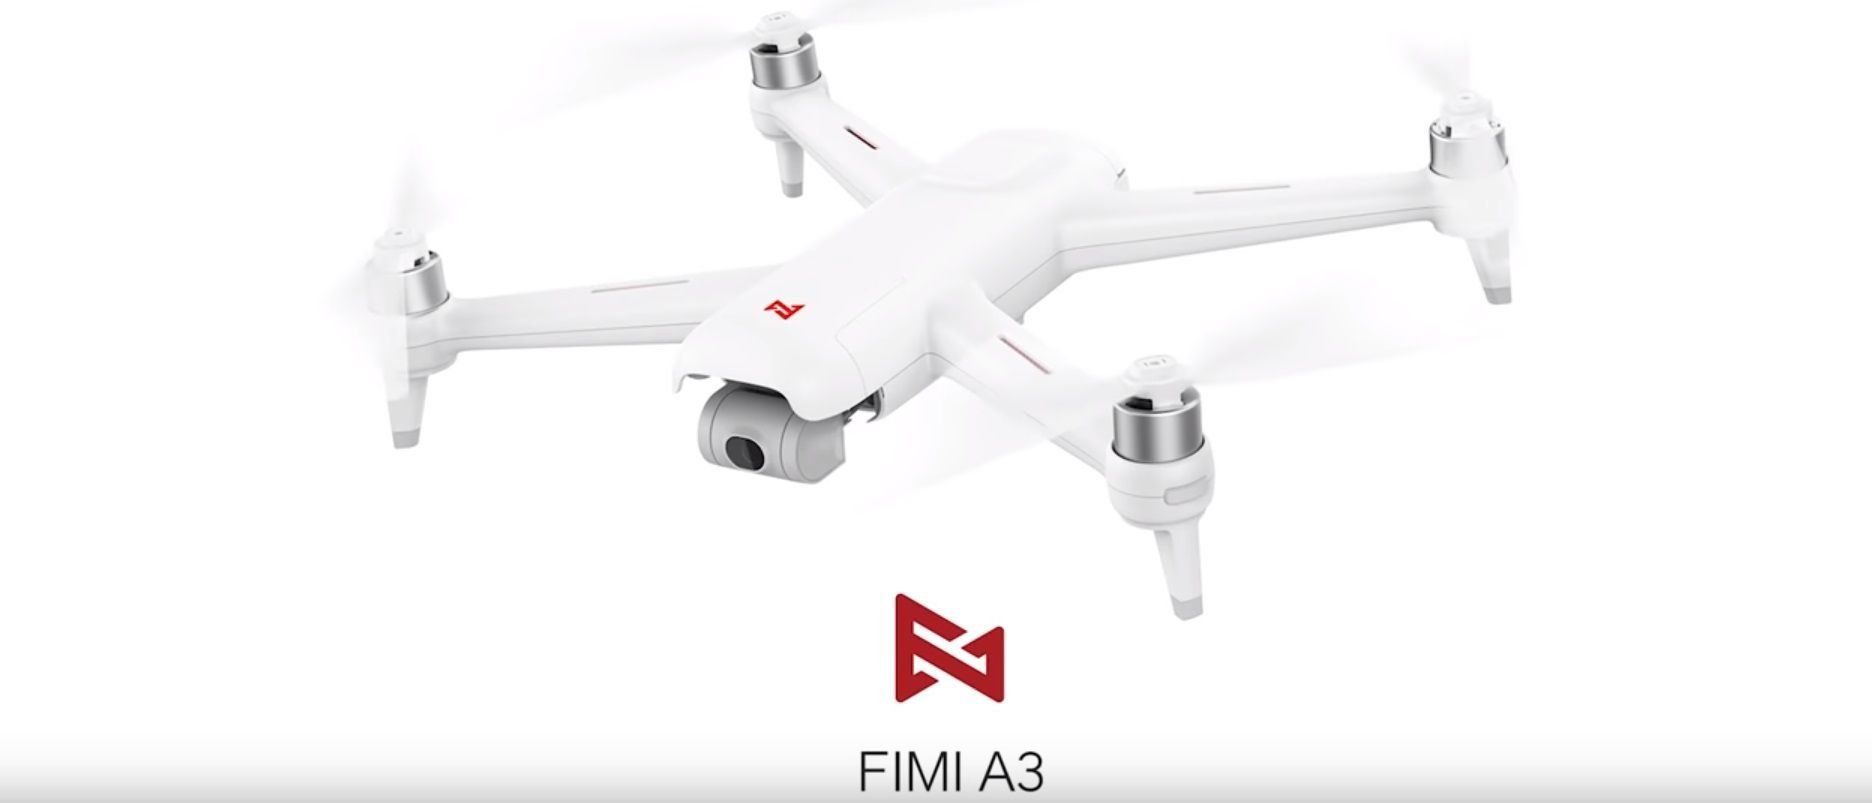 Granskning av Xiaomi FIMI A3 quadcopter med fördelar och nackdelar